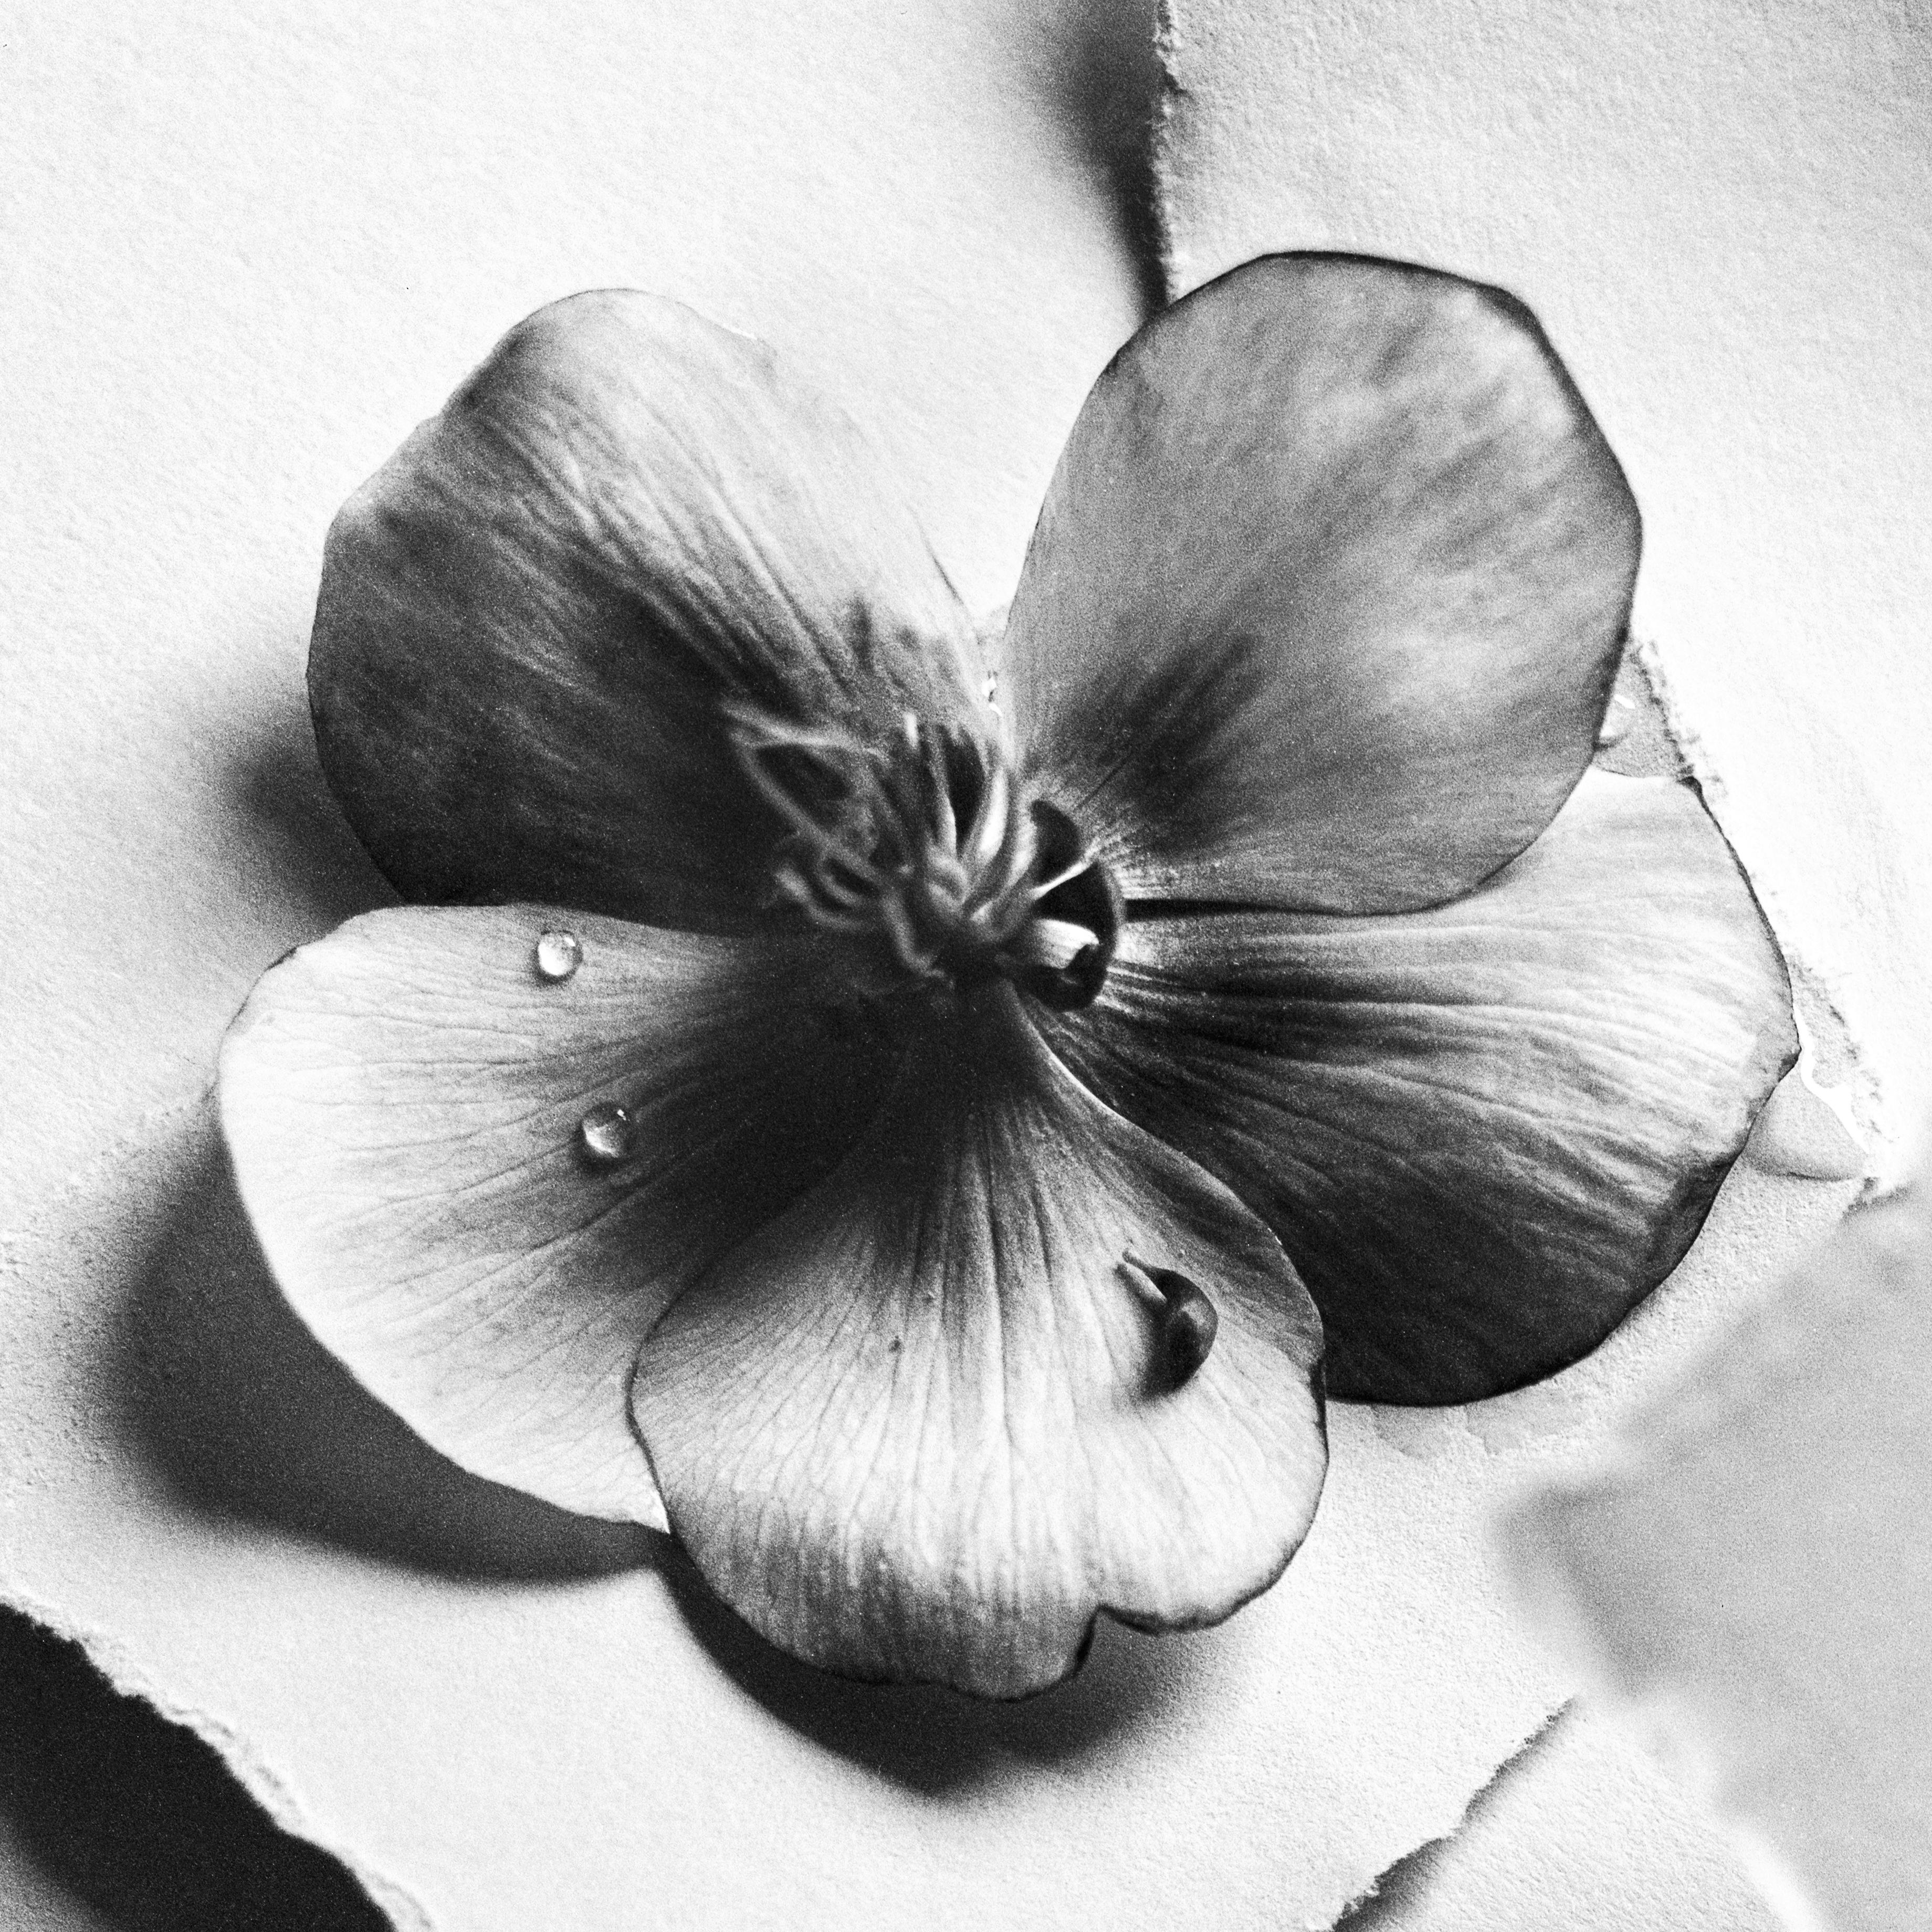 Ugne Pouwell Still-Life Photograph – Schwarze Hellebore Nr.4 – Schwarz-Weiß-Blumenfotografie in Schwarz, limitierte Auflage 20 Stück